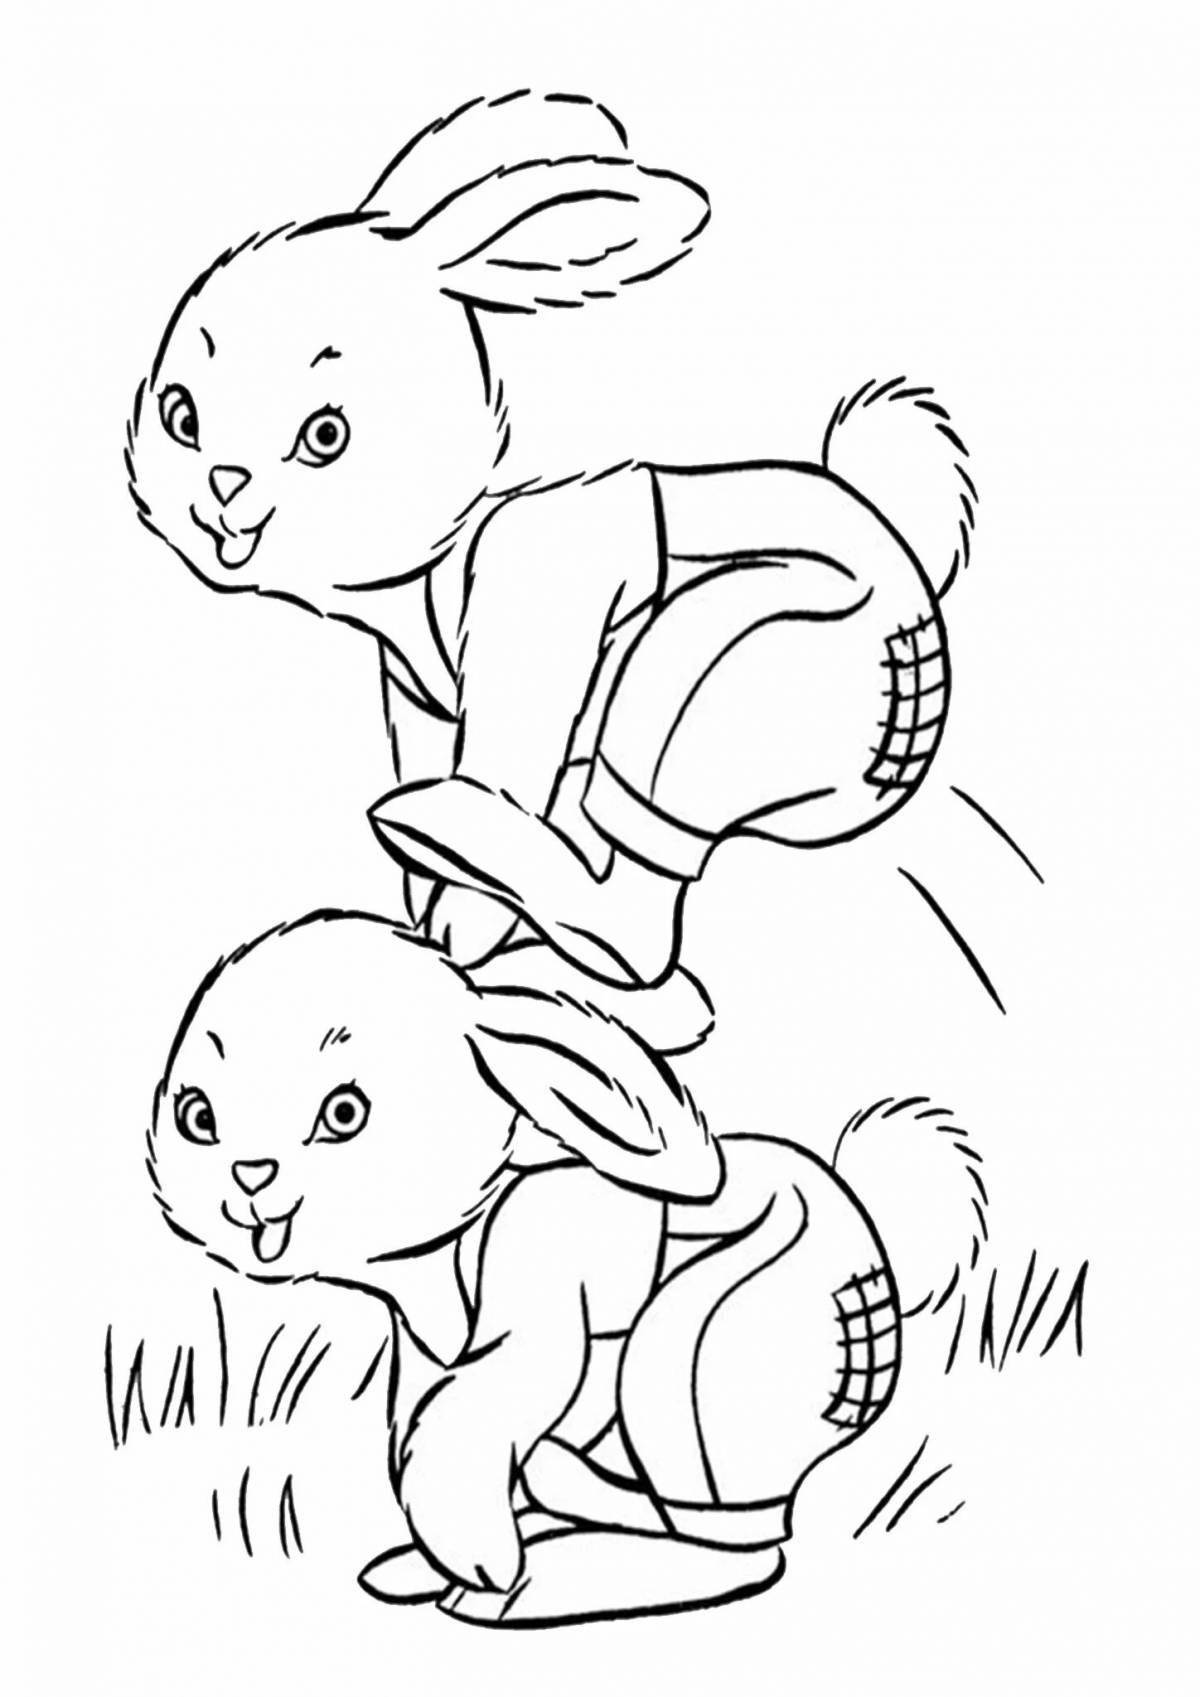 Остроумный кролик-прыгун